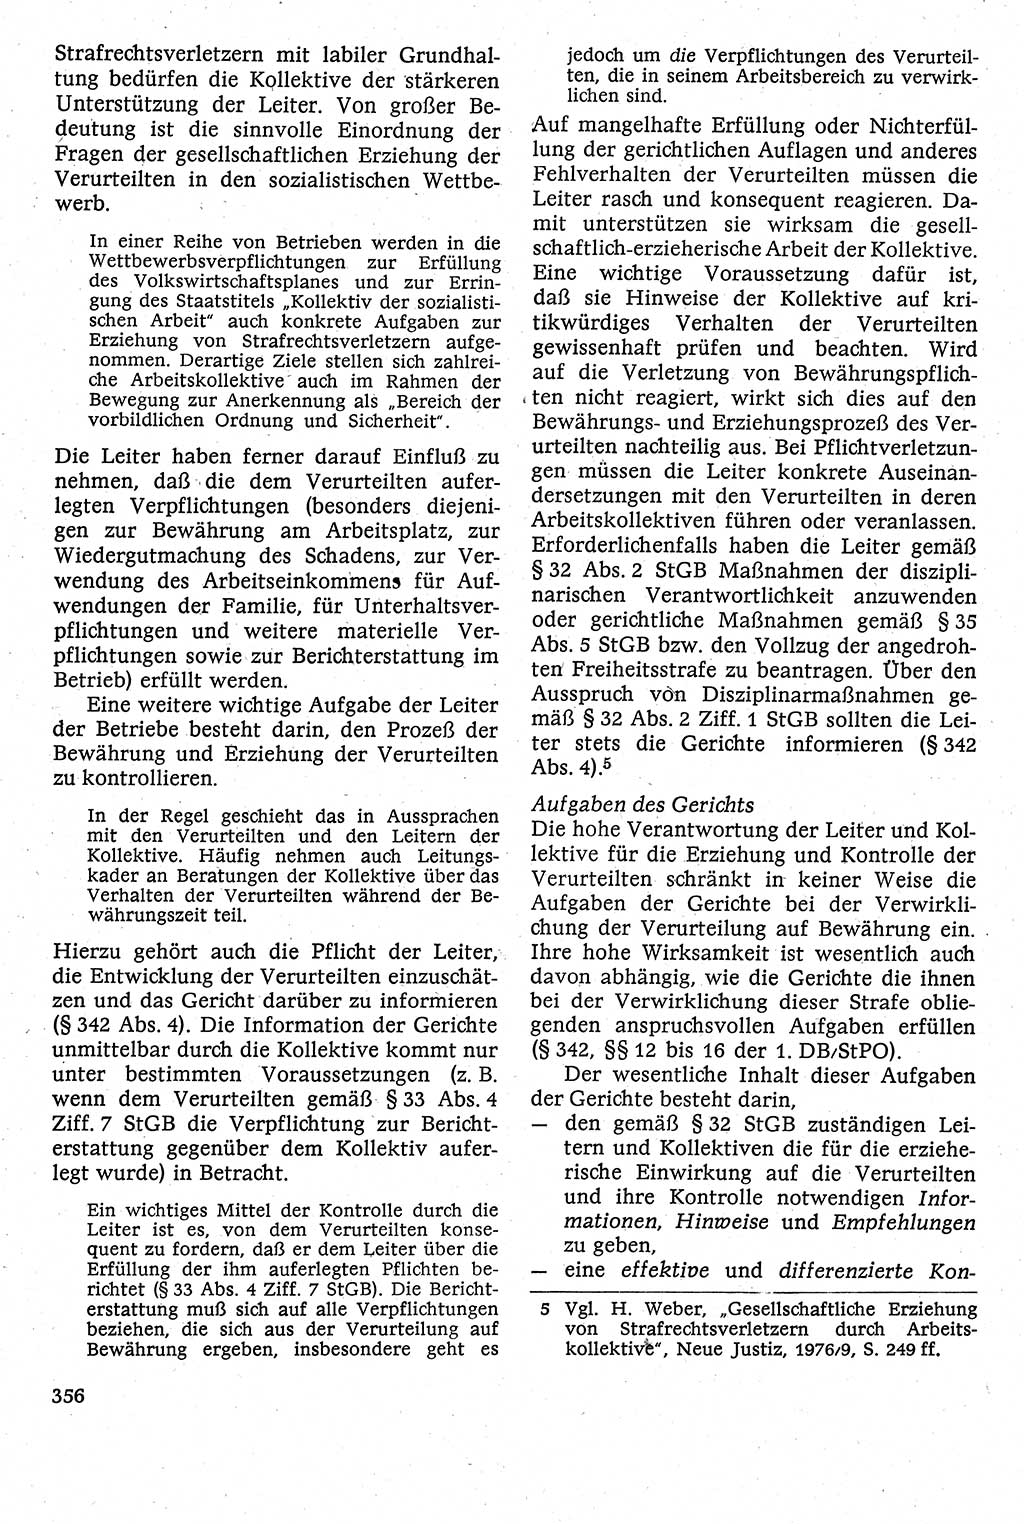 Strafverfahrensrecht [Deutsche Demokratische Republik (DDR)], Lehrbuch 1982, Seite 356 (Strafverf.-R. DDR Lb. 1982, S. 356)